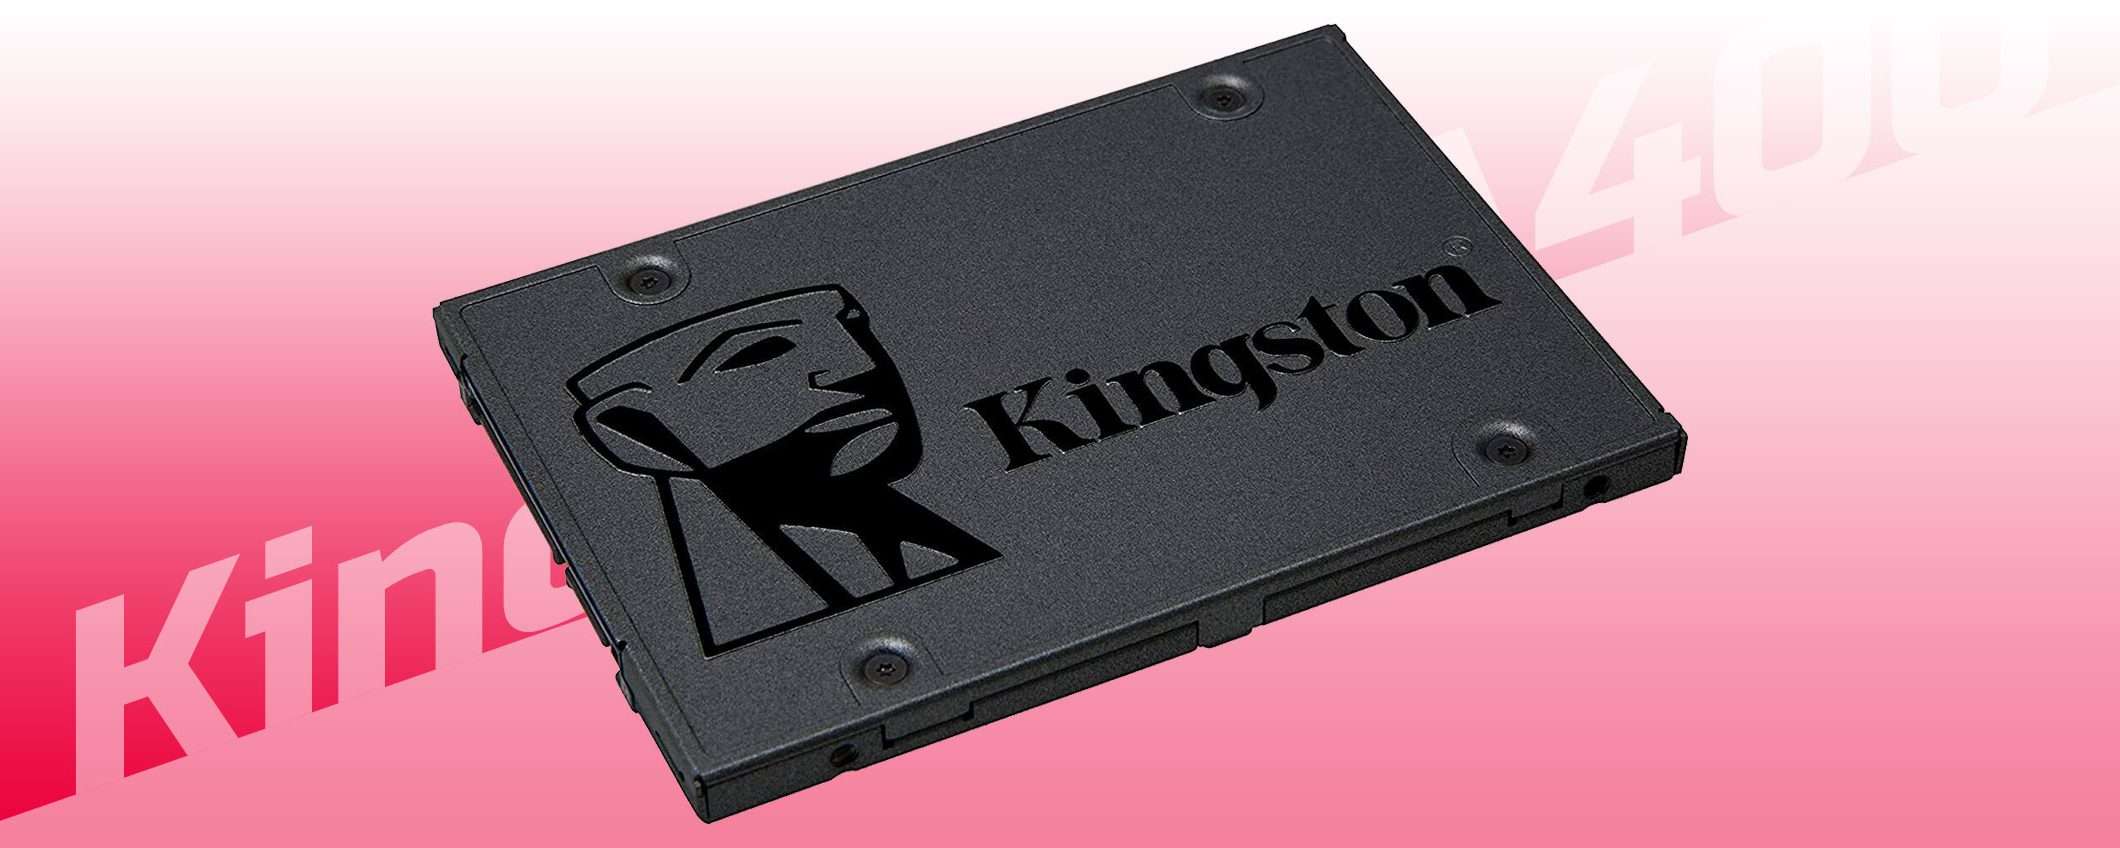 SSD a 19,99€: ecco la Kingston A400 da 240 GB